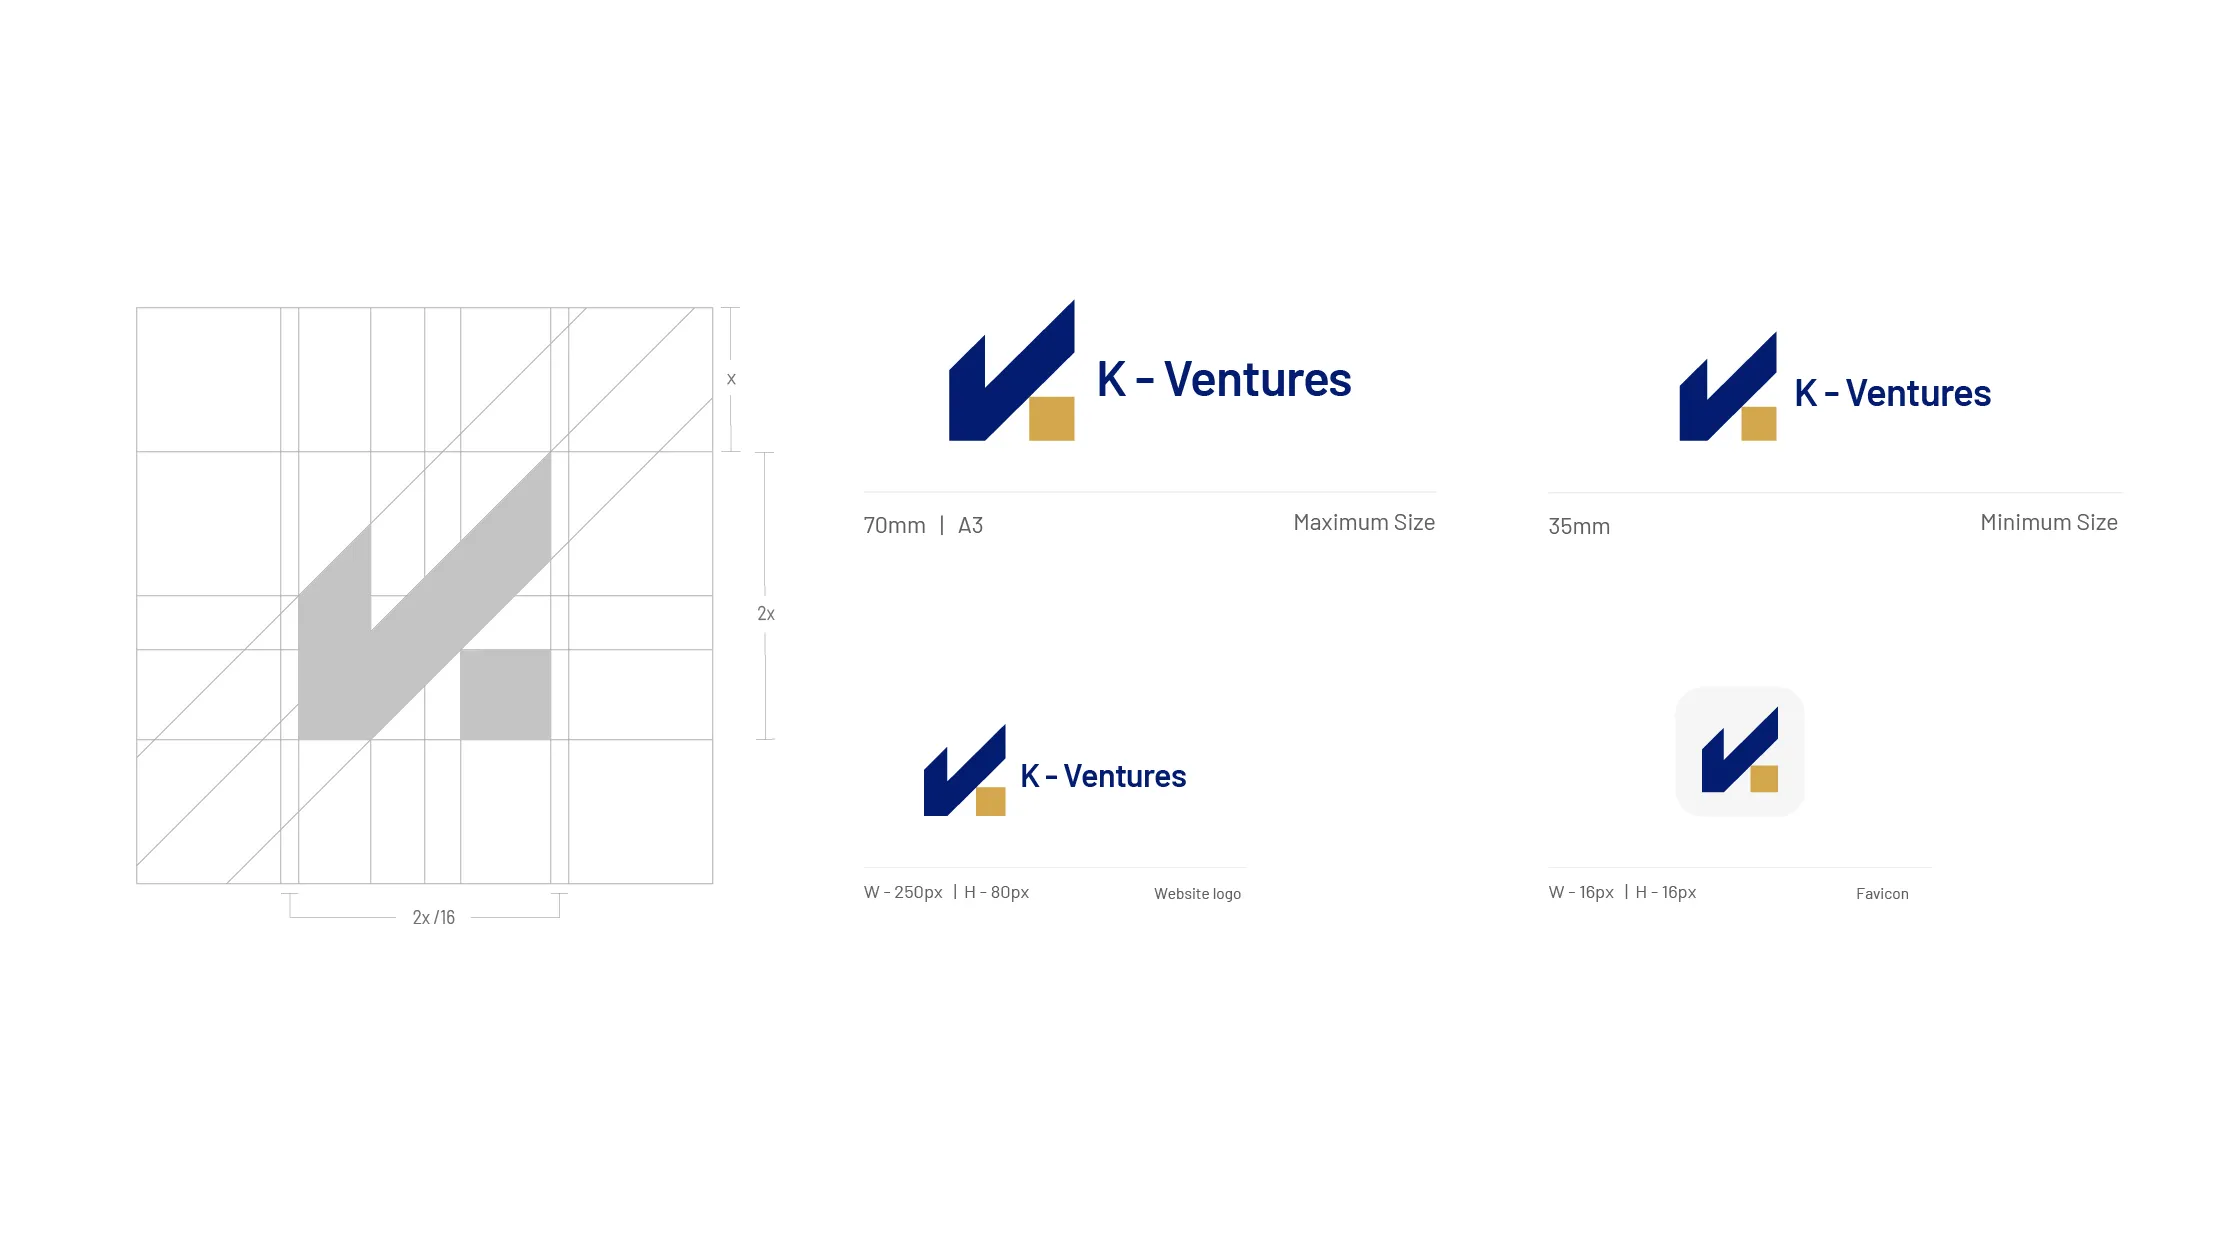 K-Ventures